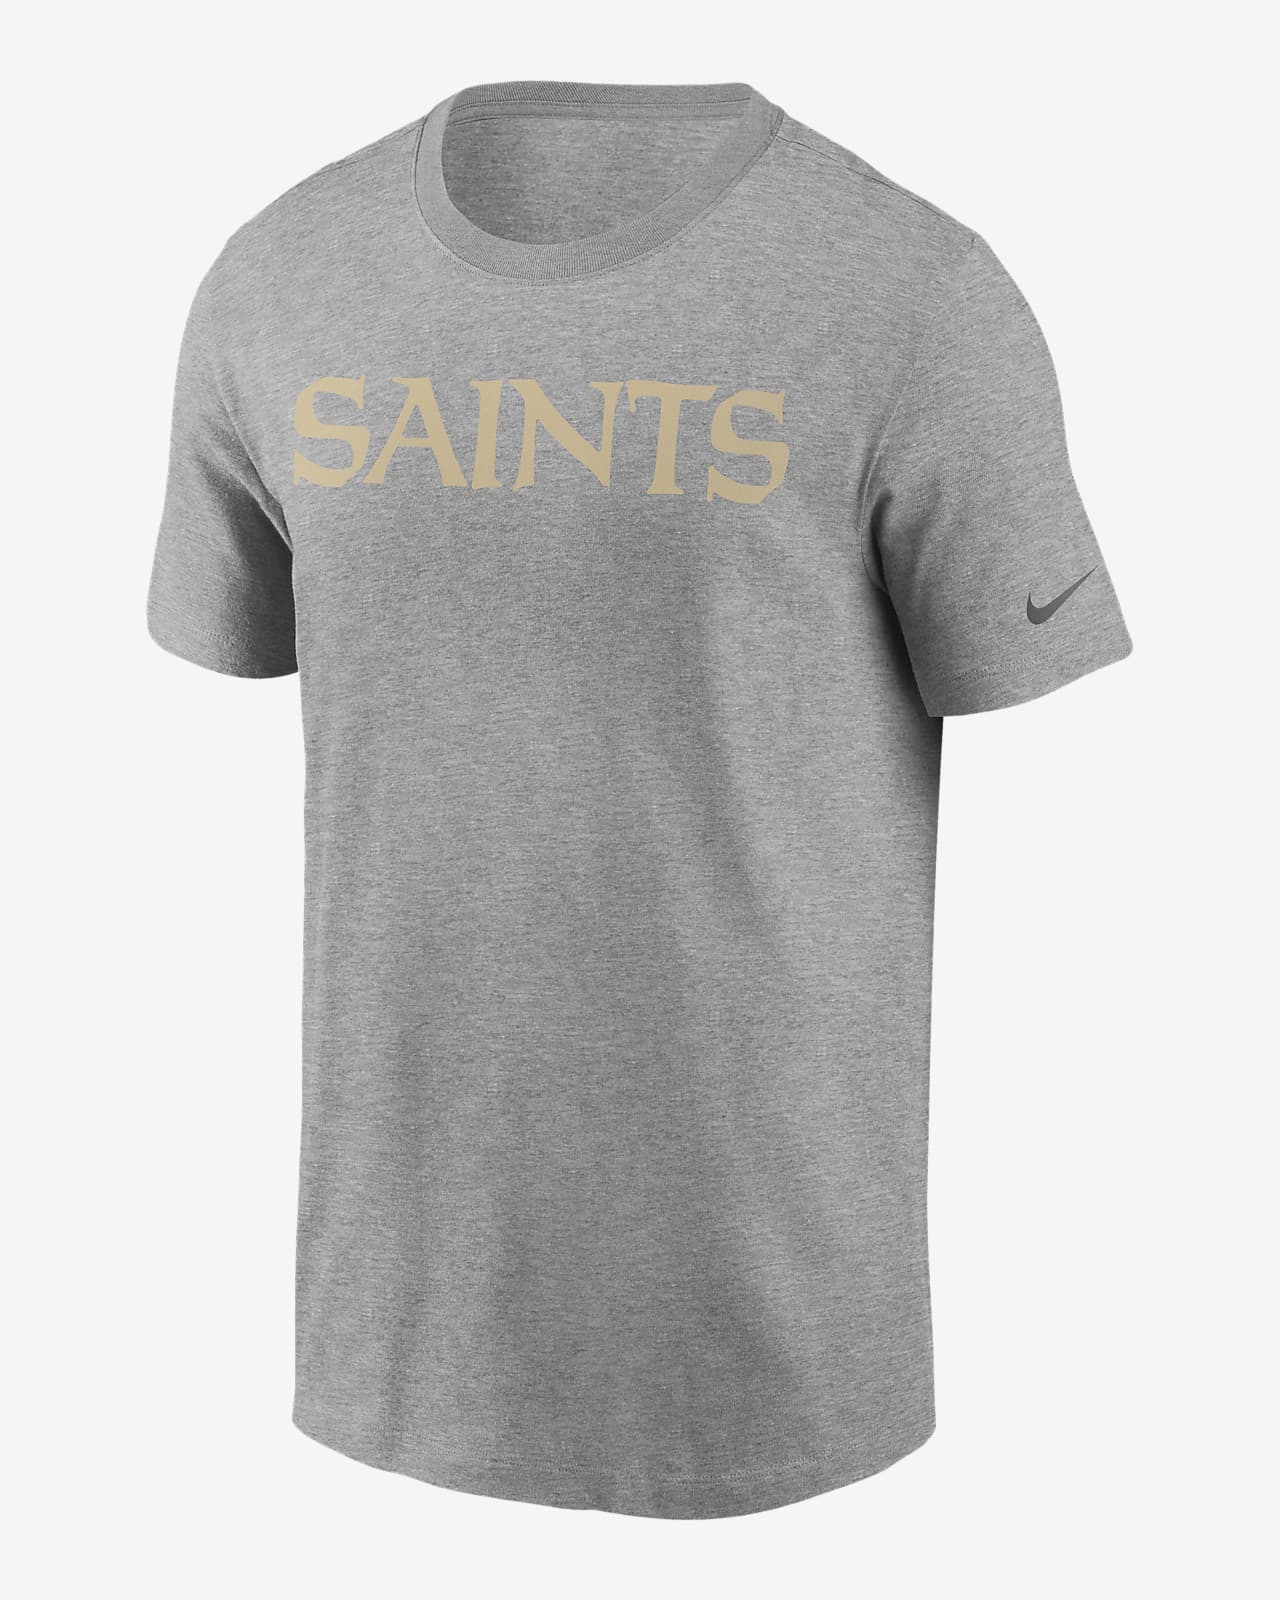 nike saints shirt